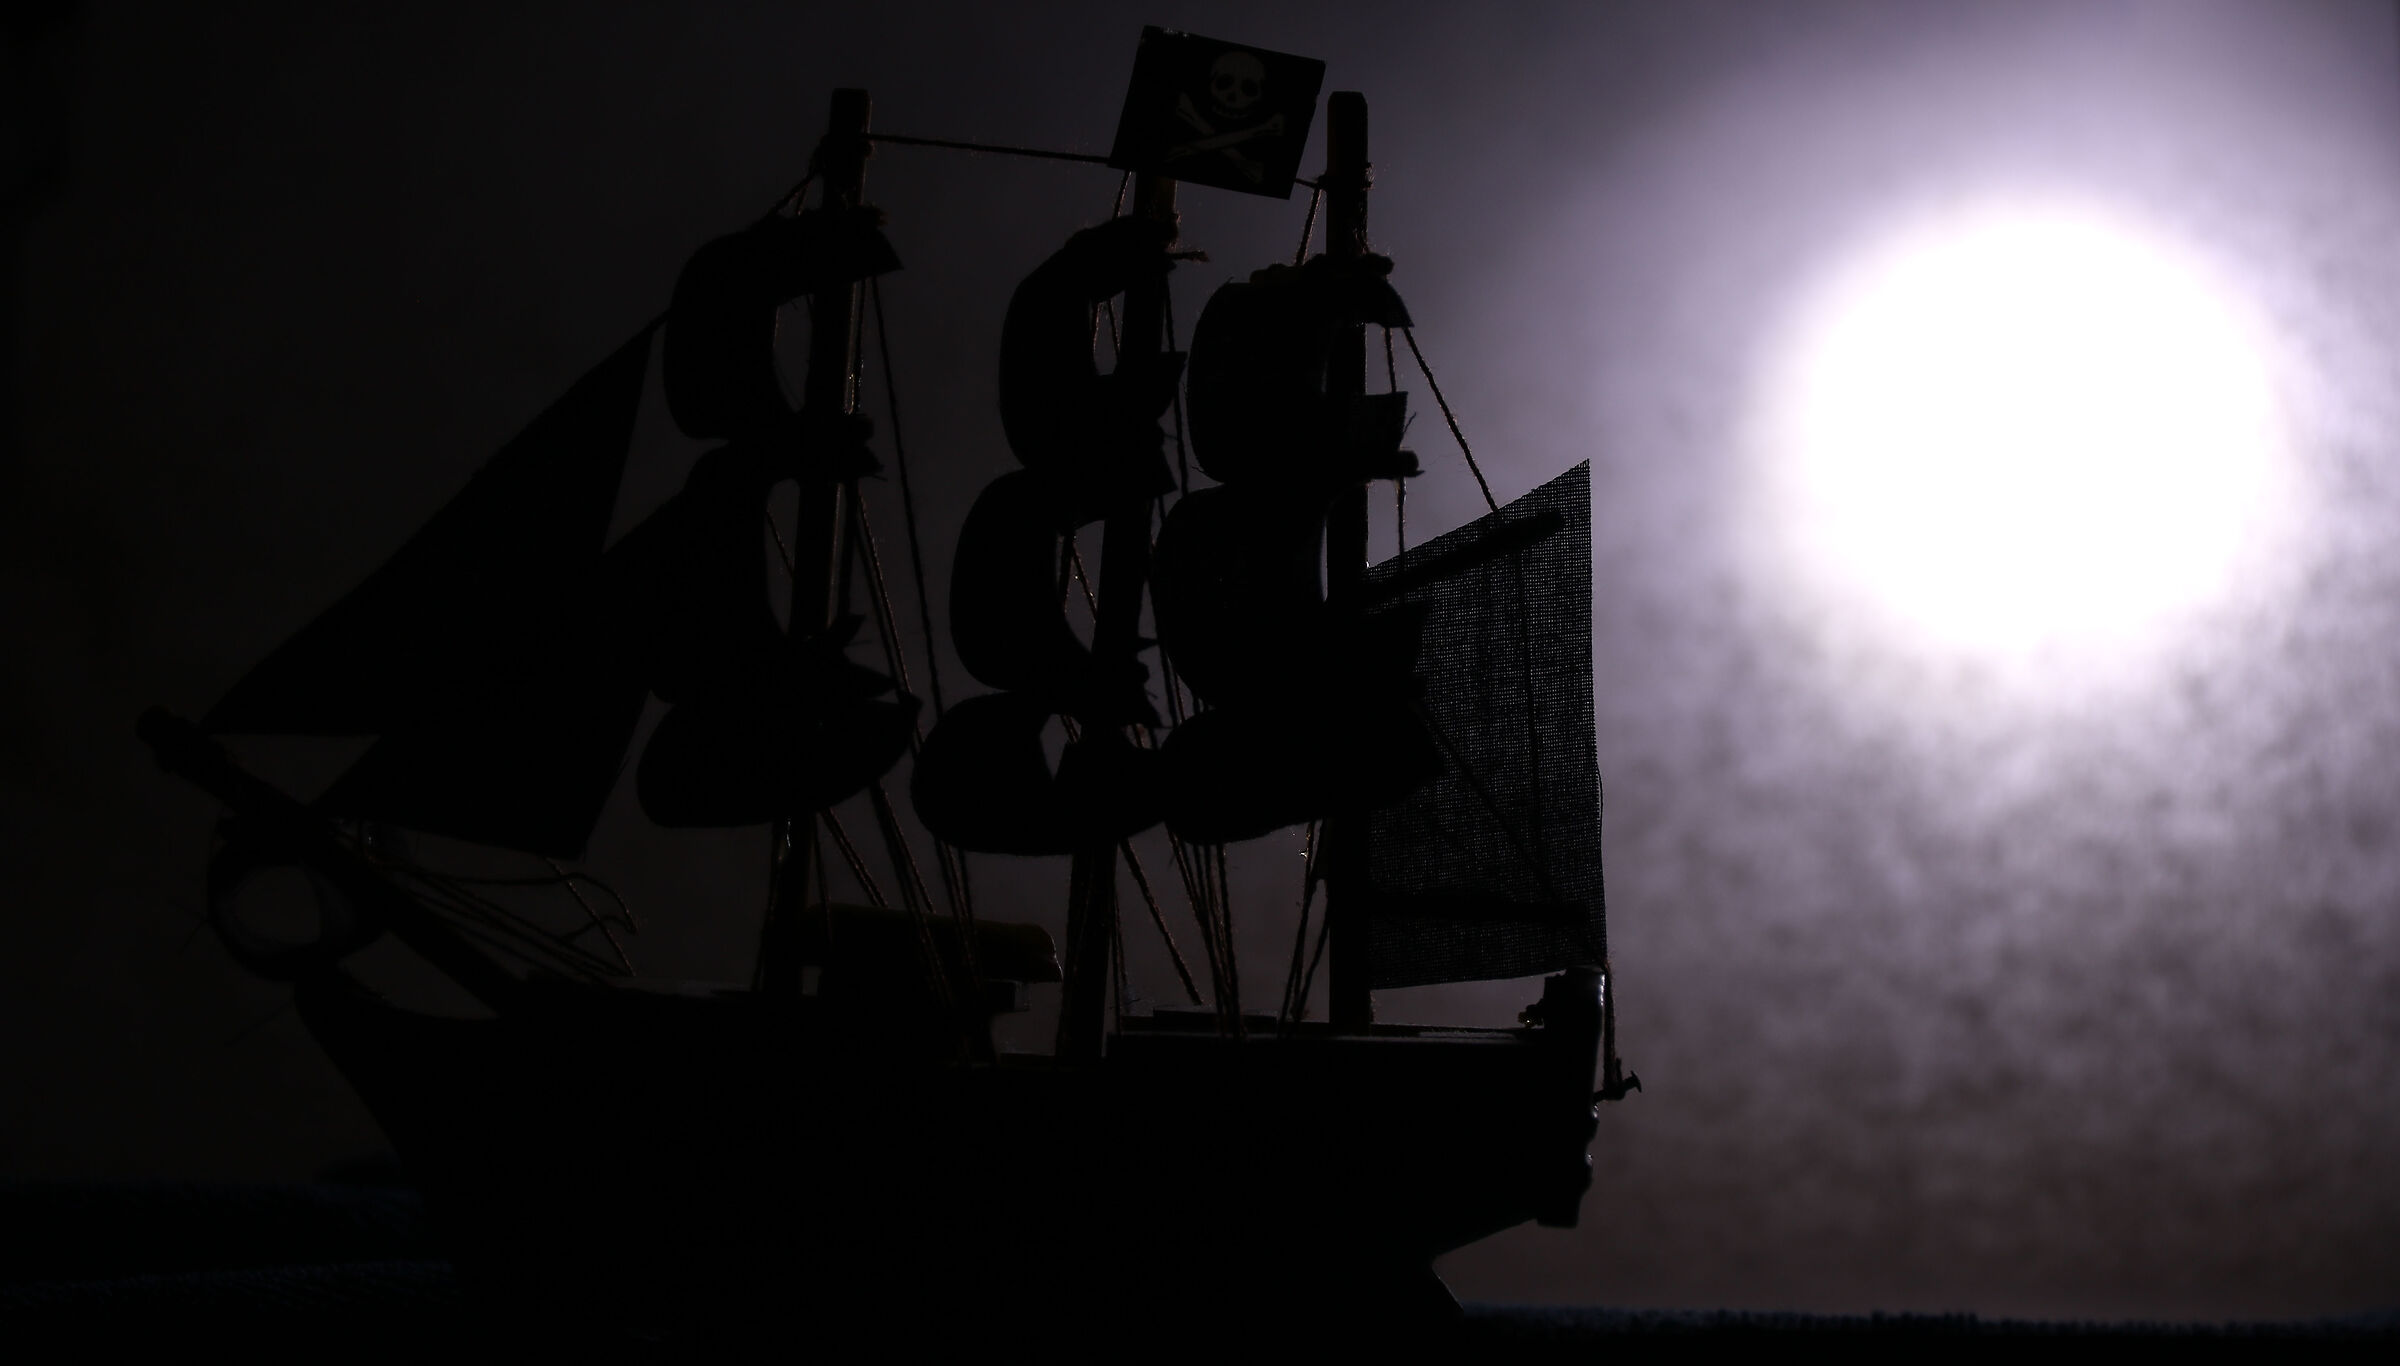 moonlight sailing ship...